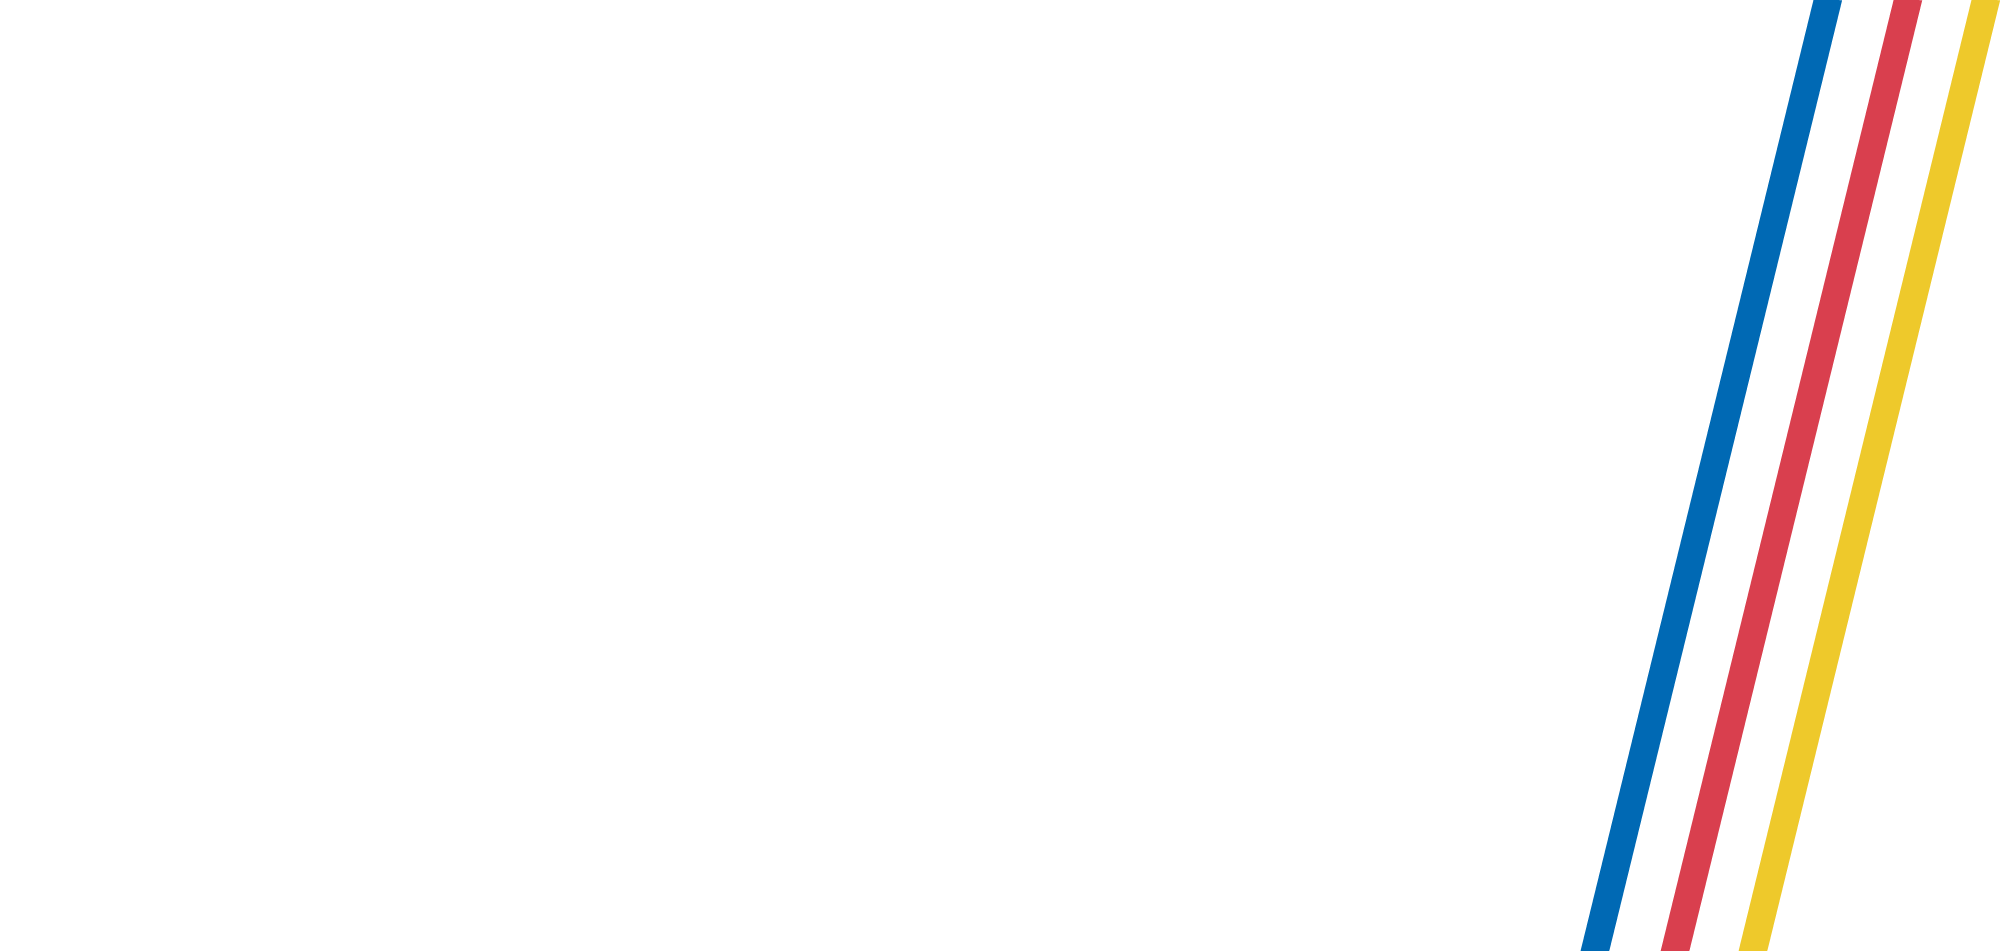 Logo Open Campus Day weiß